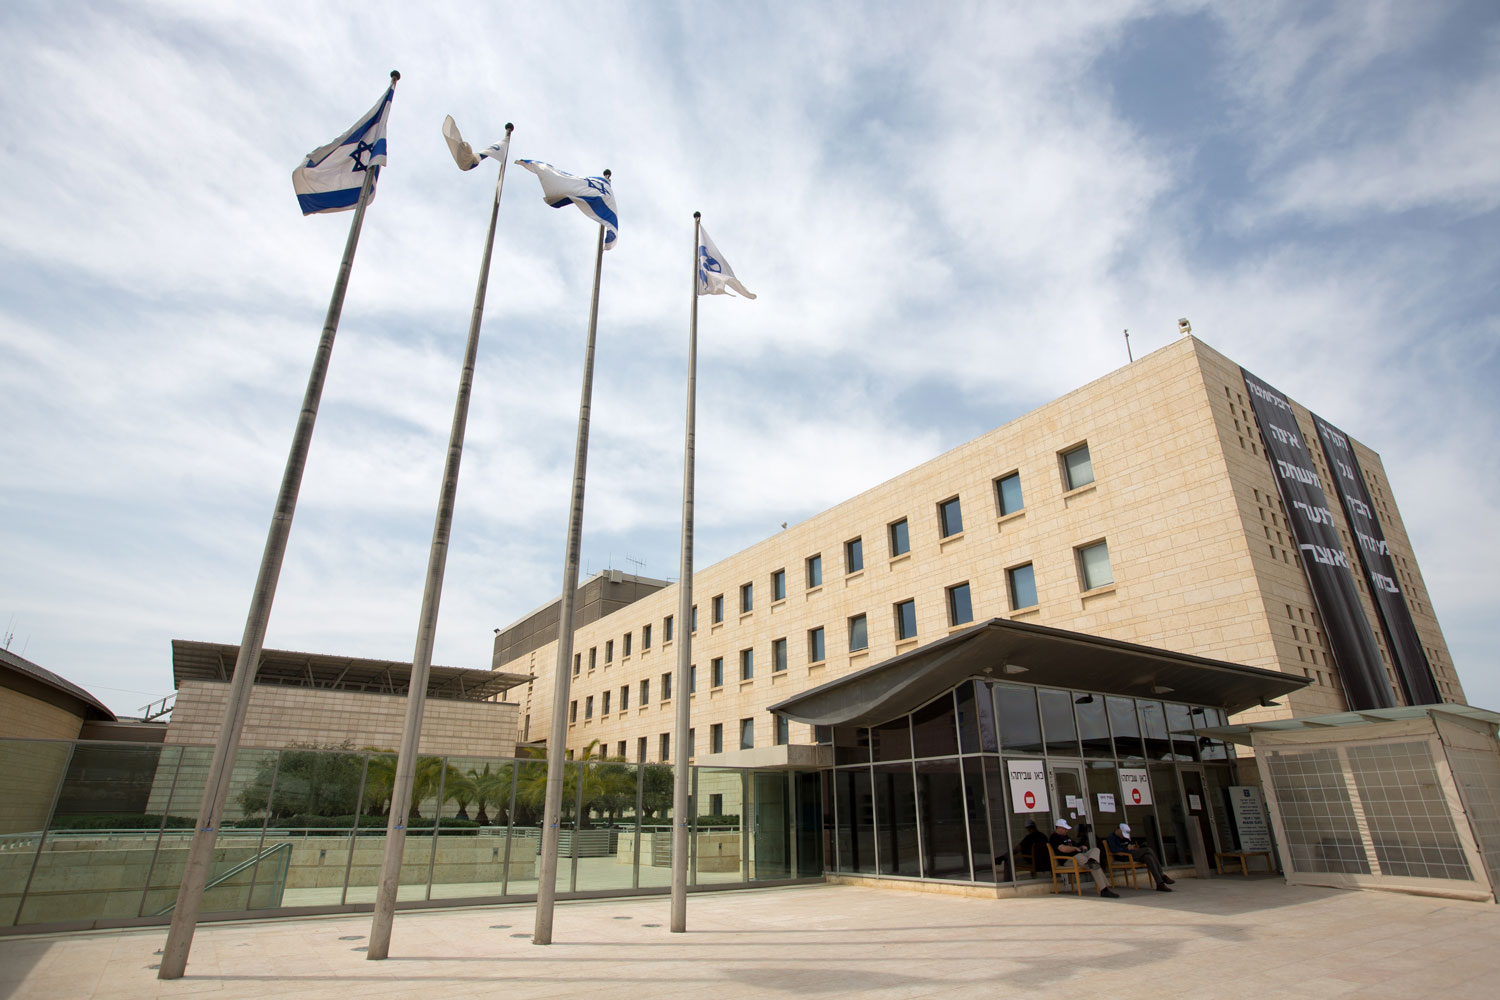 Histórica huelga general en la diplomacia israelí afecta a un centenar de embajadas y consulados